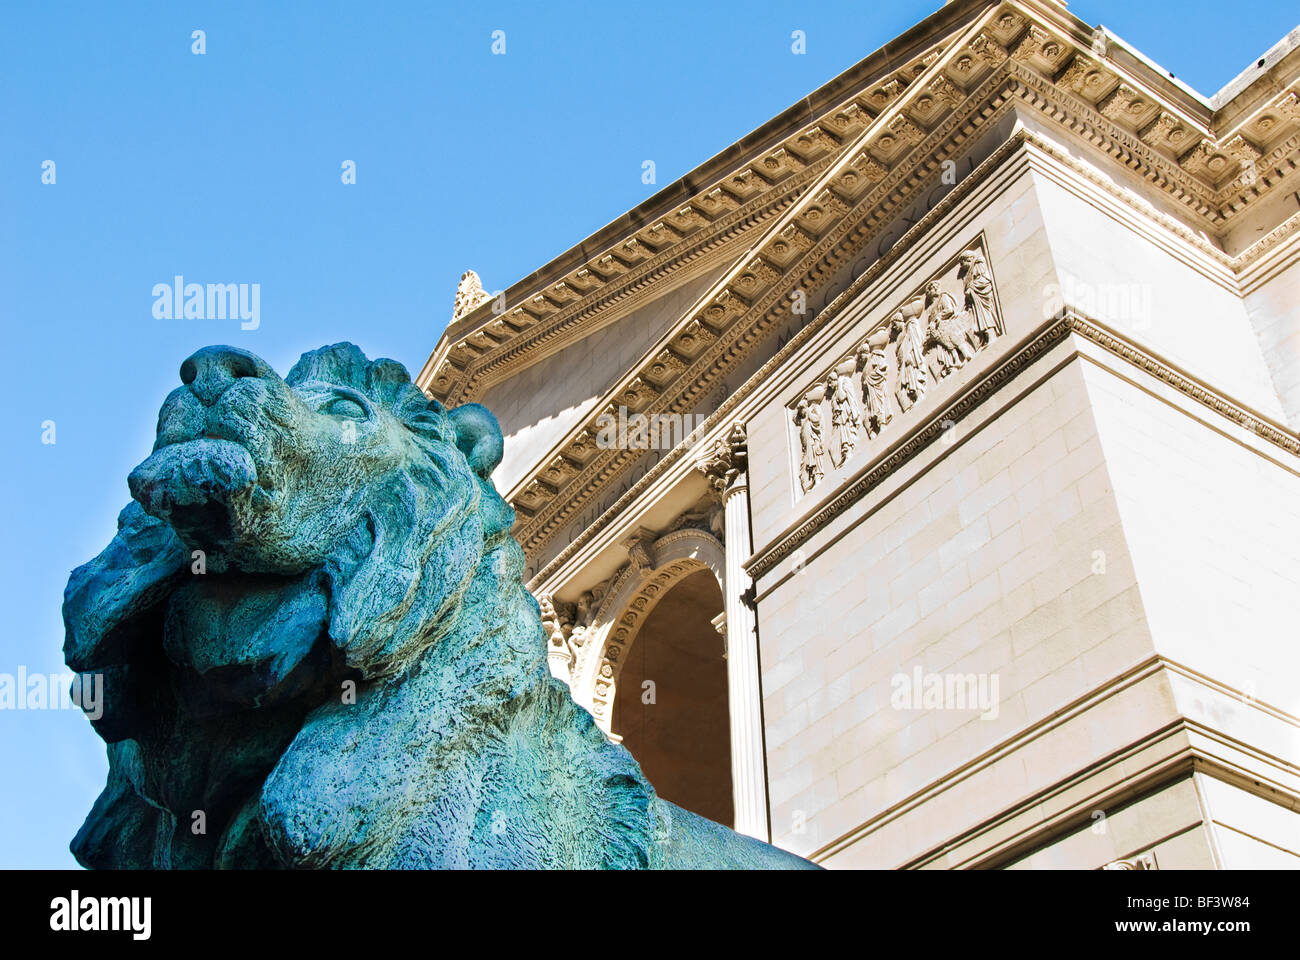 Statue de lion en bronze à l'entrée de l'Art Institute of Chicago, Chicago, Illinois, États-Unis Banque D'Images